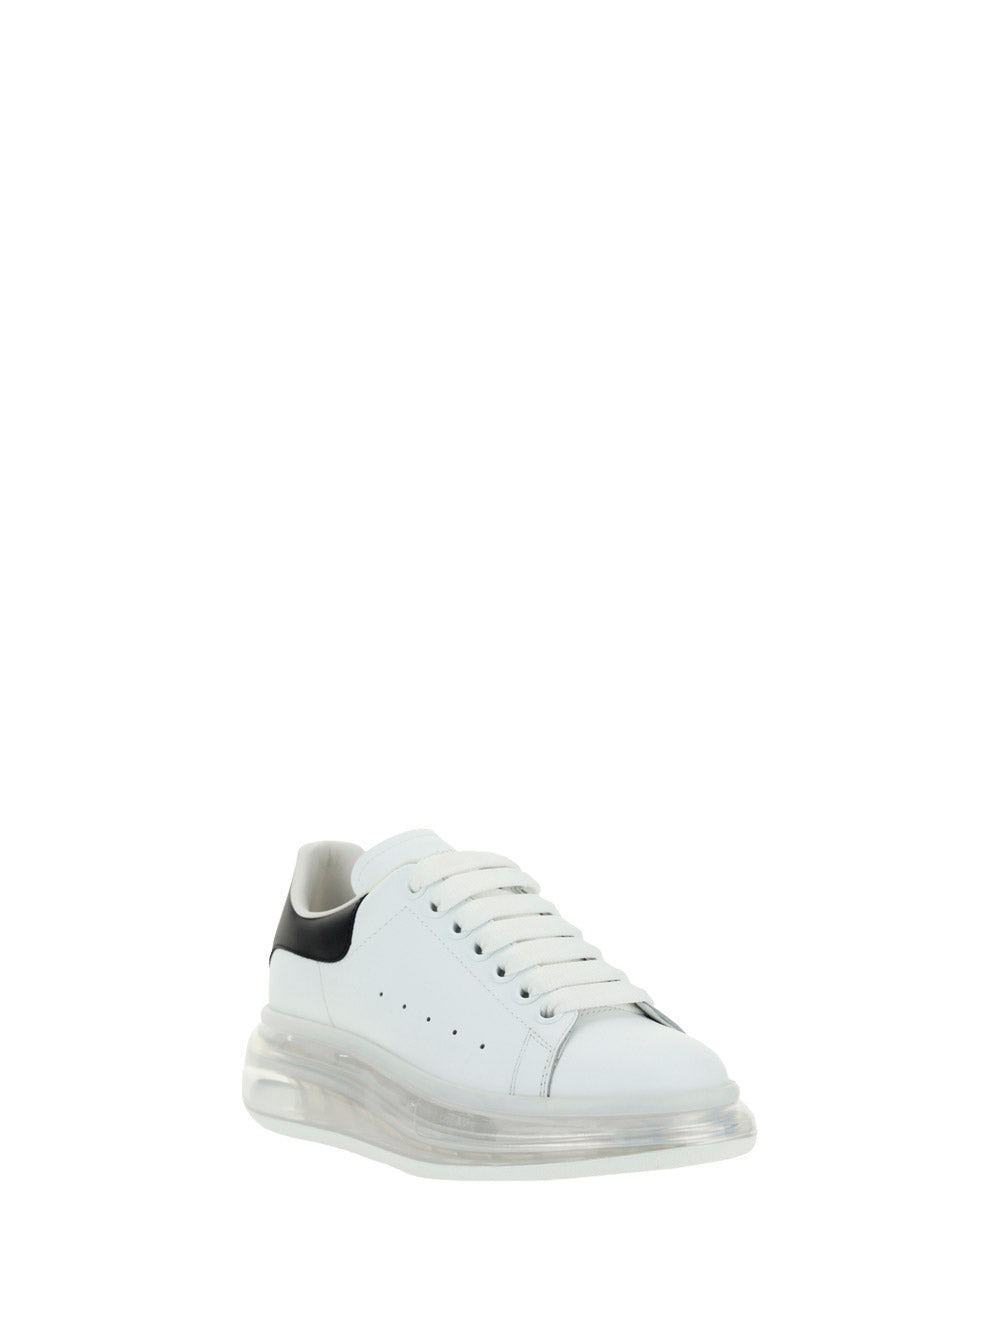 Oversized Sneaker - White / Black